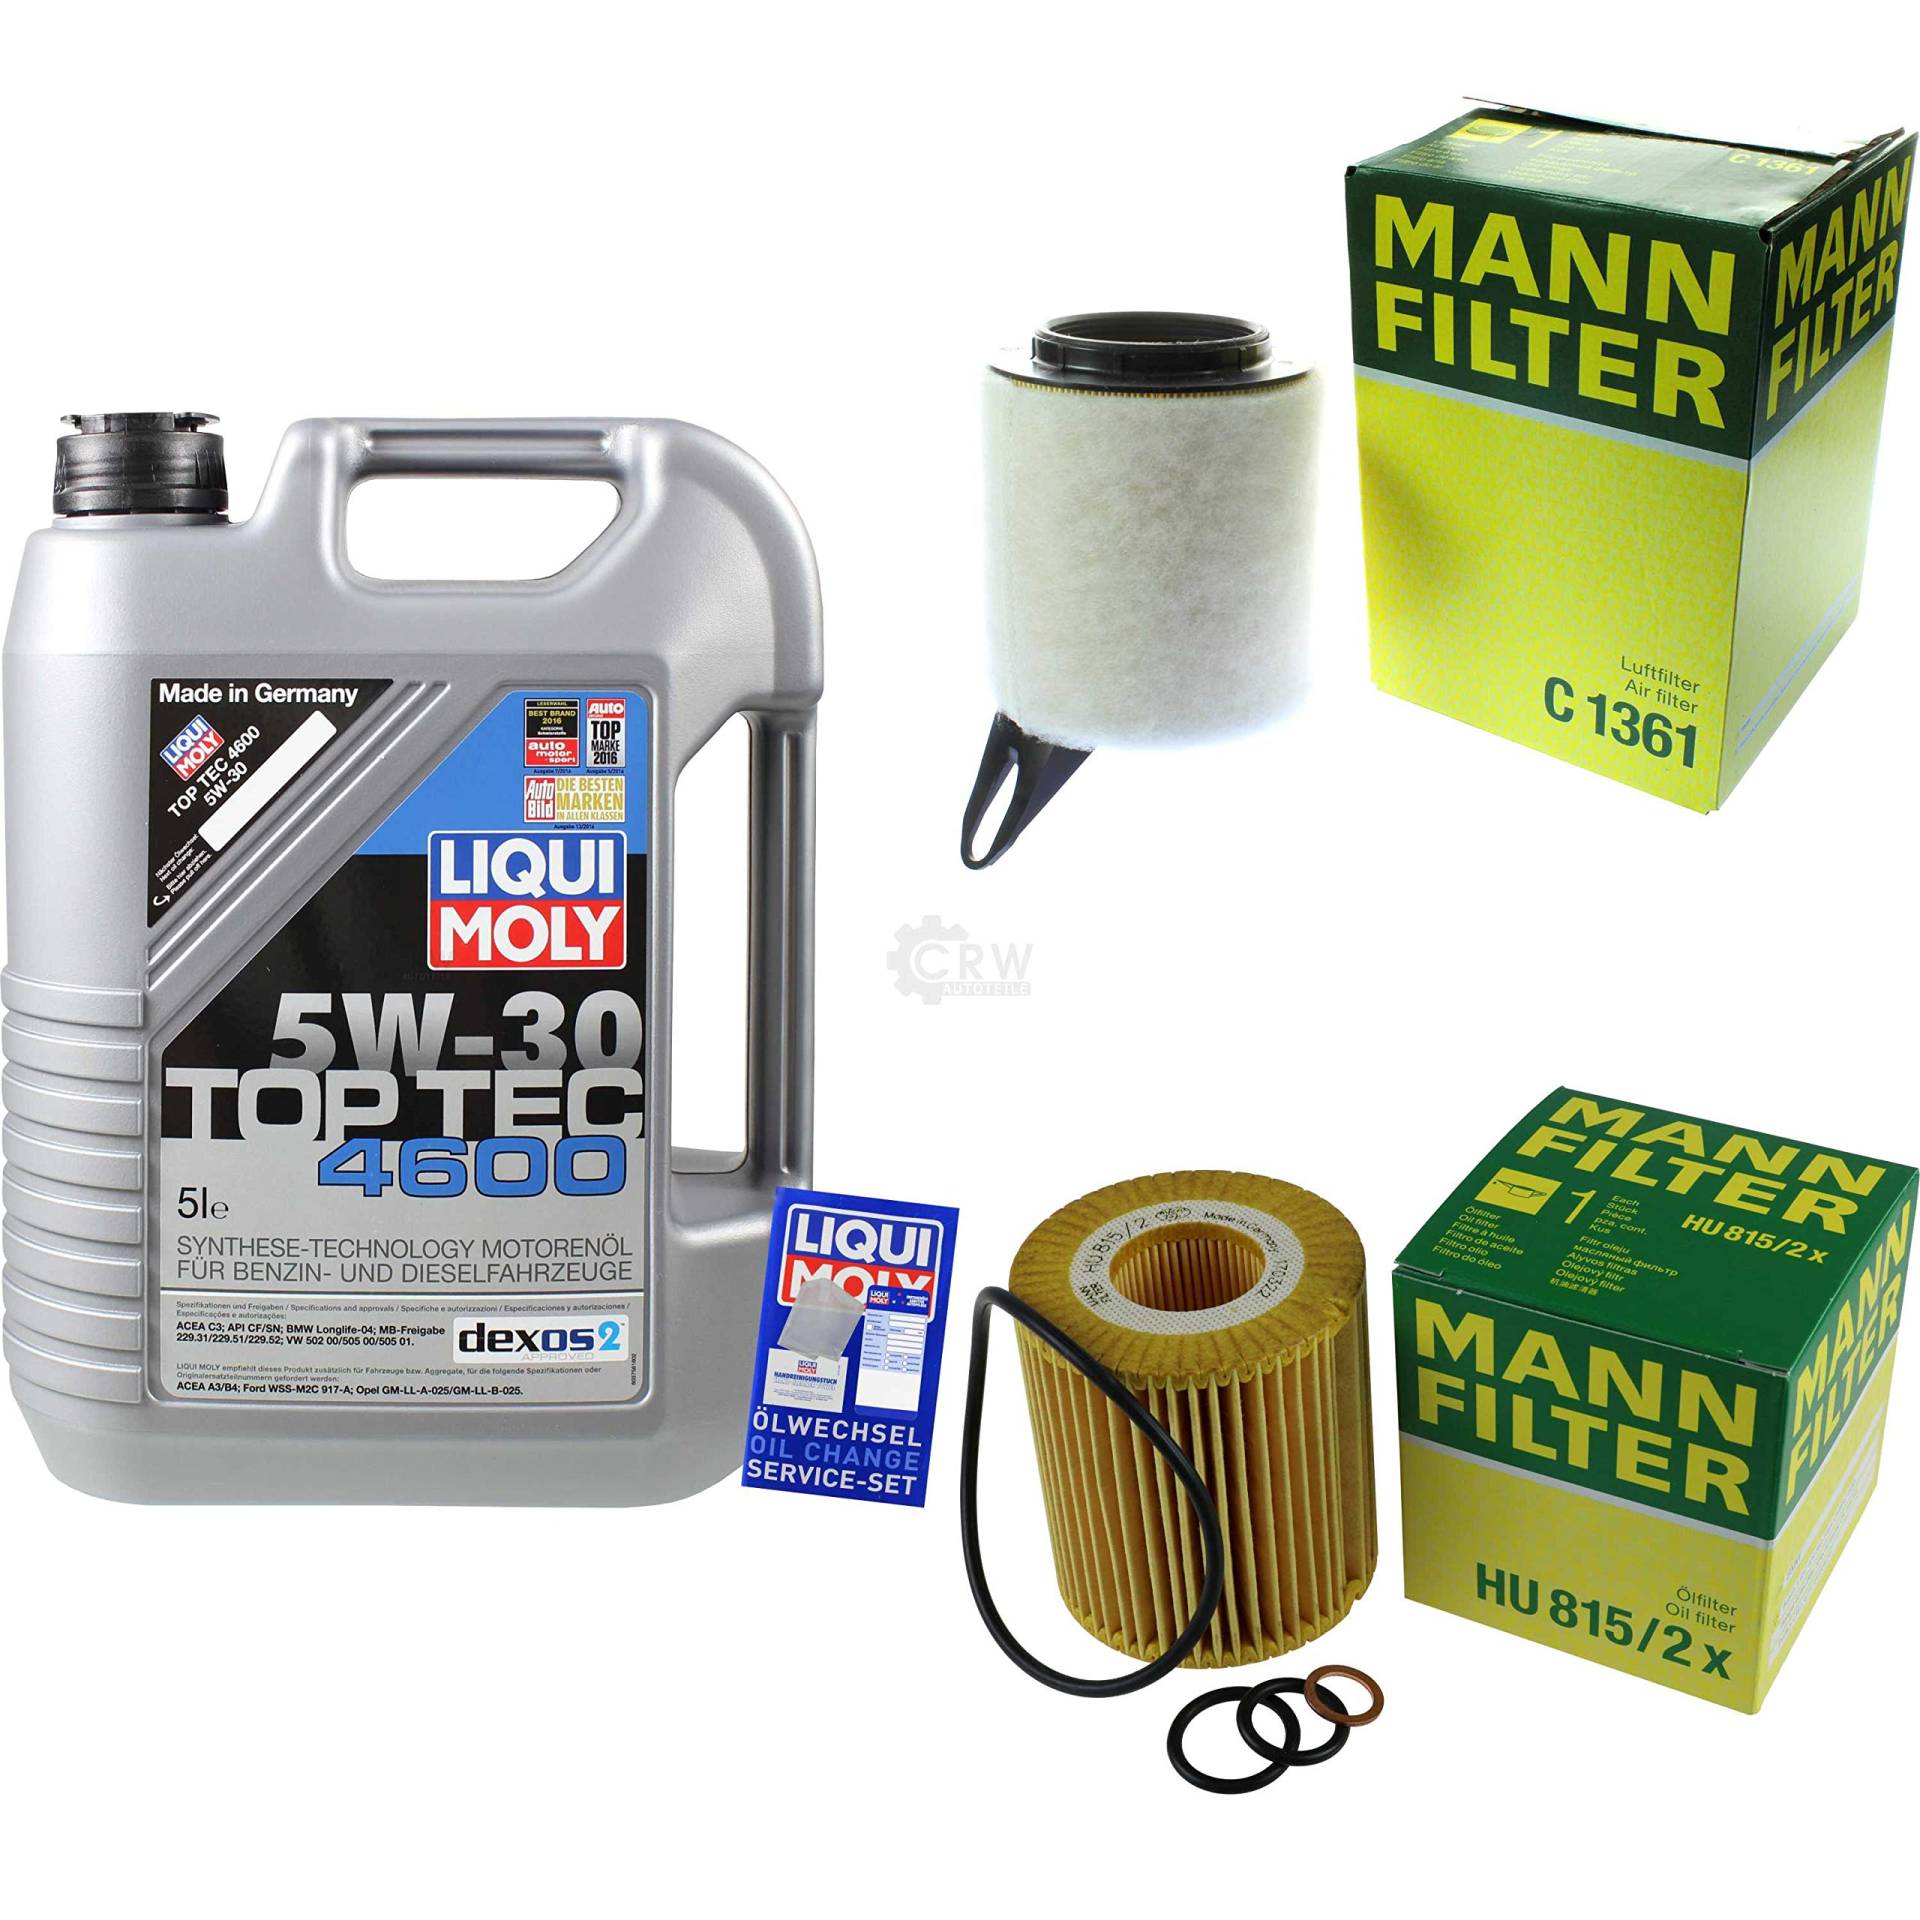 Filter Set Inspektionspaket 5 Liter Motoröl Top Tec 4600 5W-30 MANN-FILTER Luftfilter Ölfilter von Diederichs